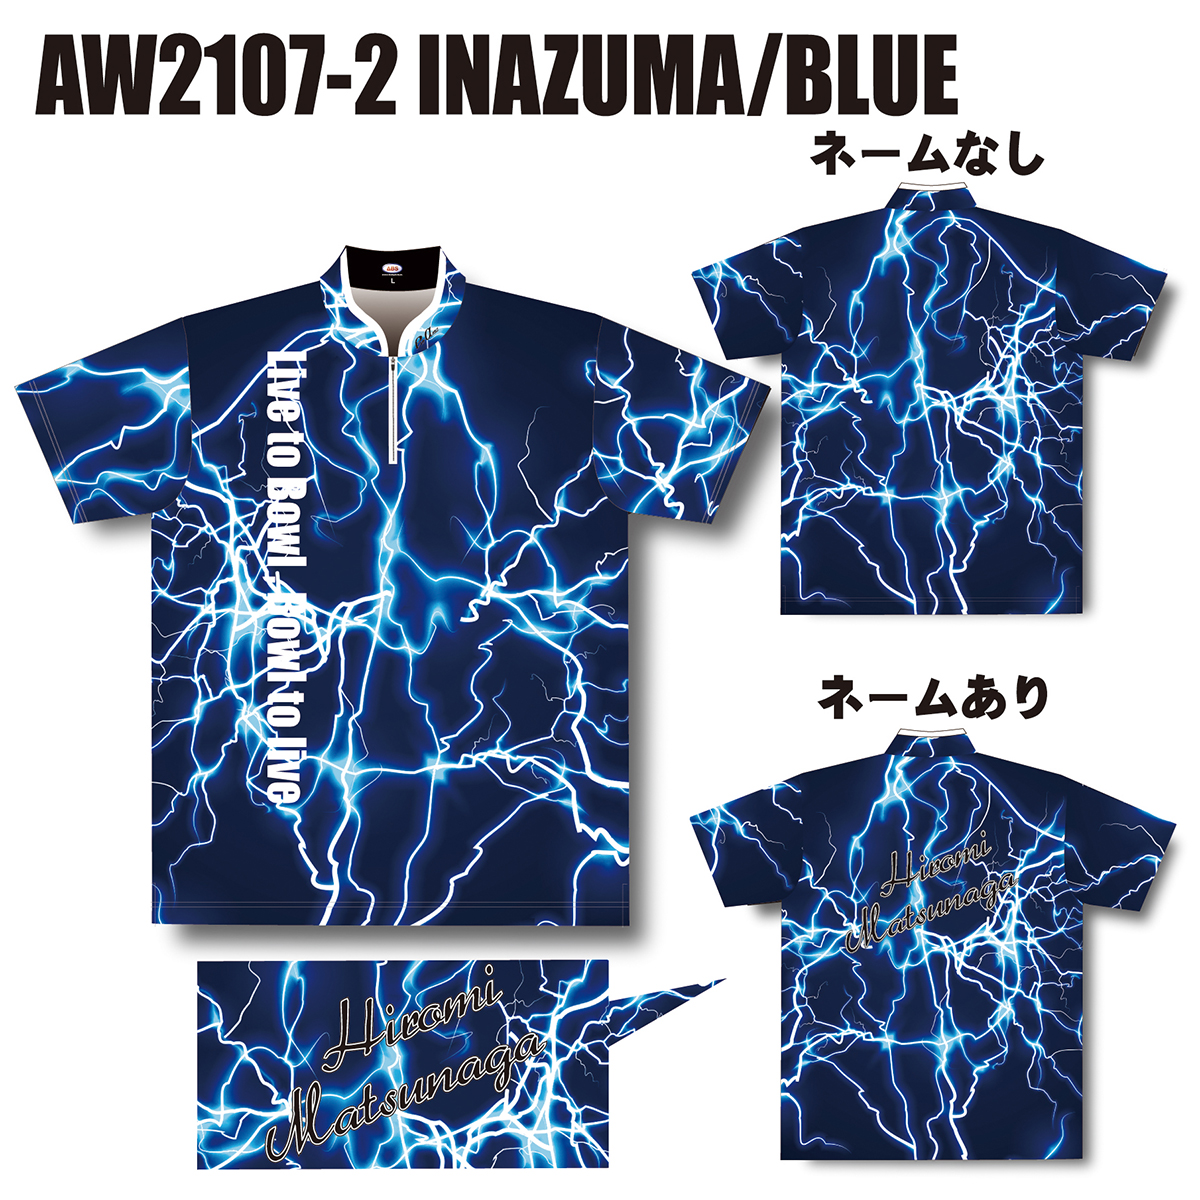 2021ウインターモデル(AW2107-2 INAZUMA/BLUE)